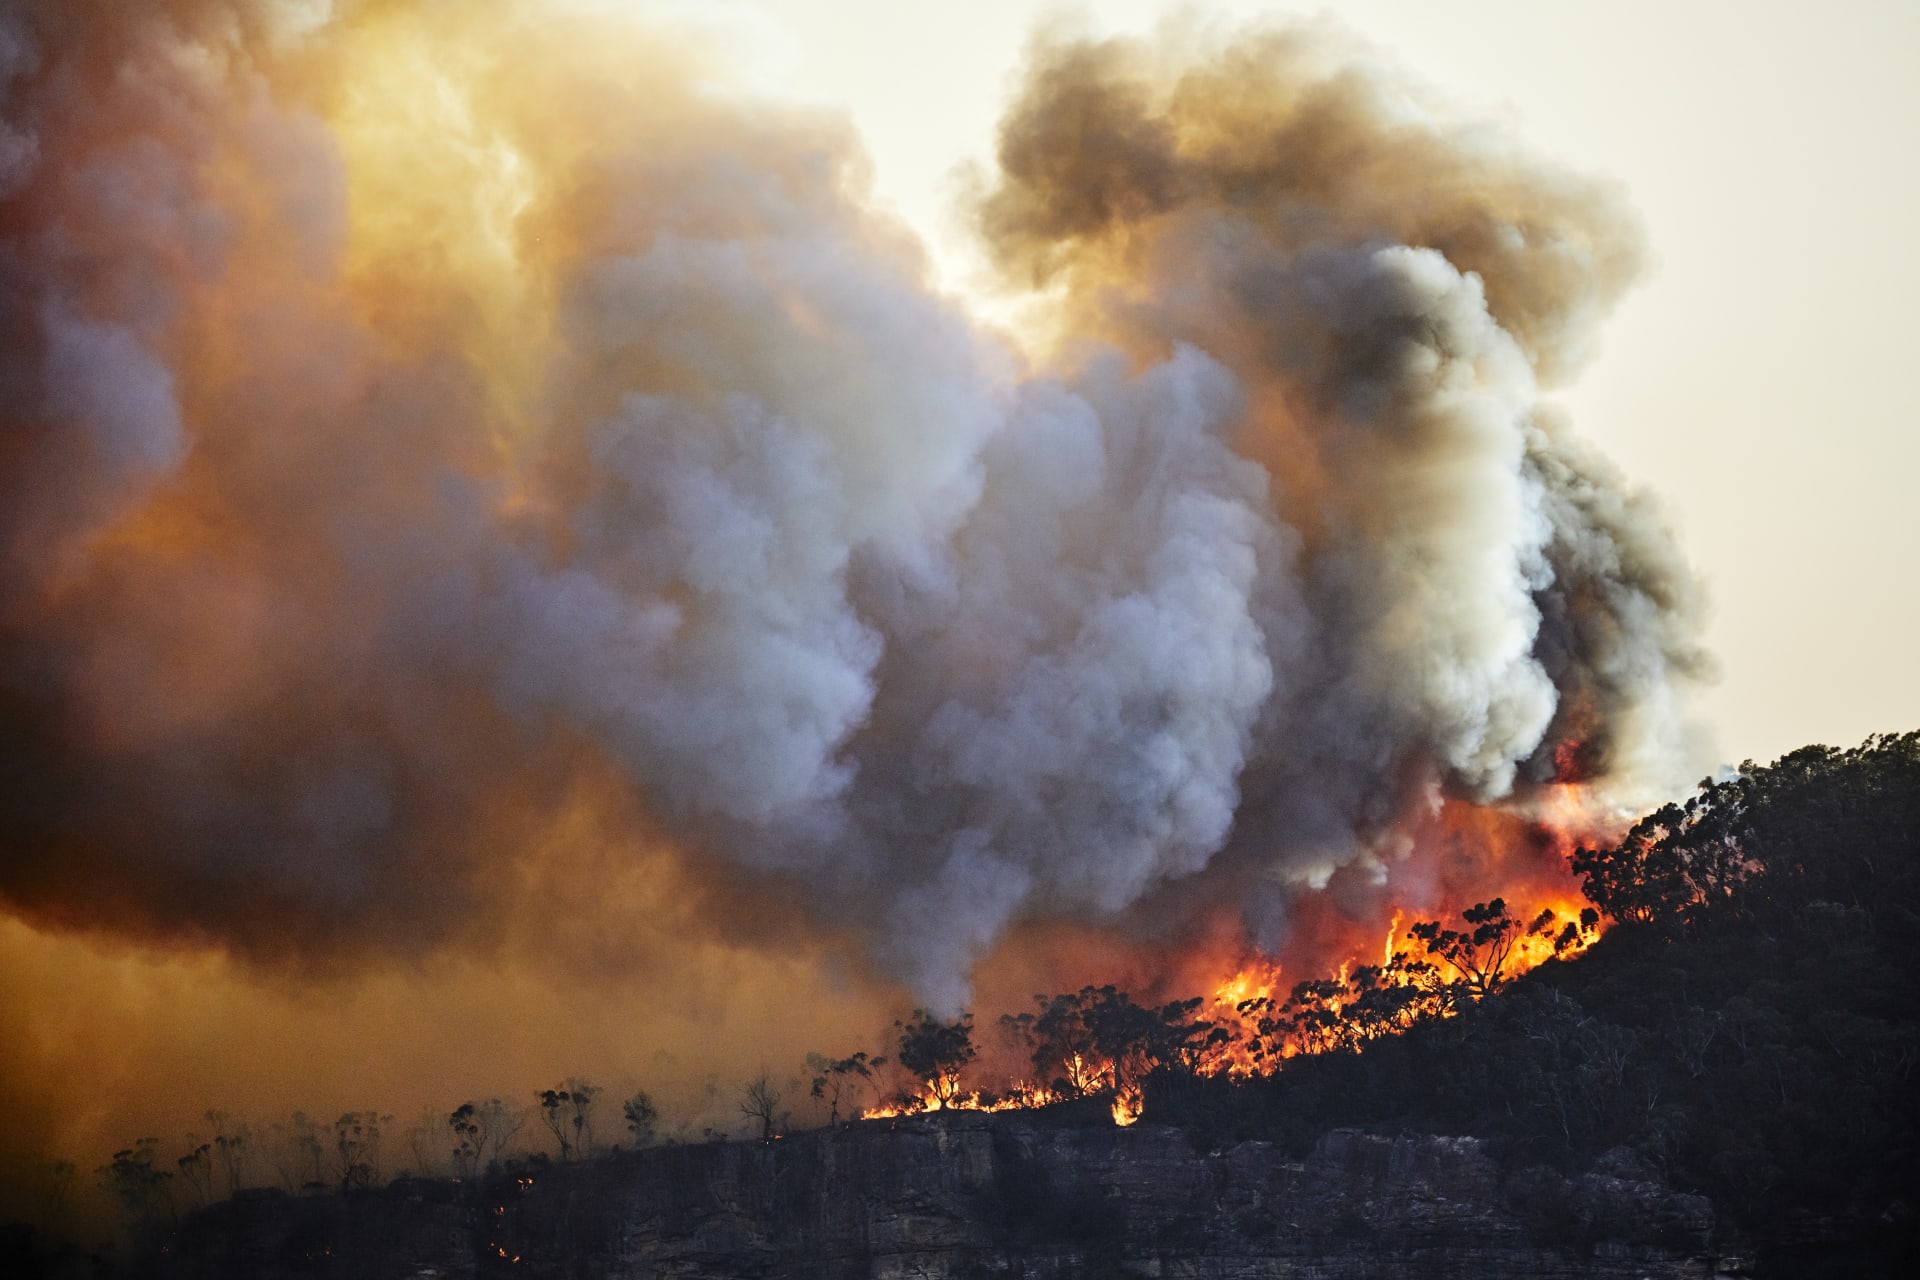 Mezi projevy klimatické změny patří i častější požáry.